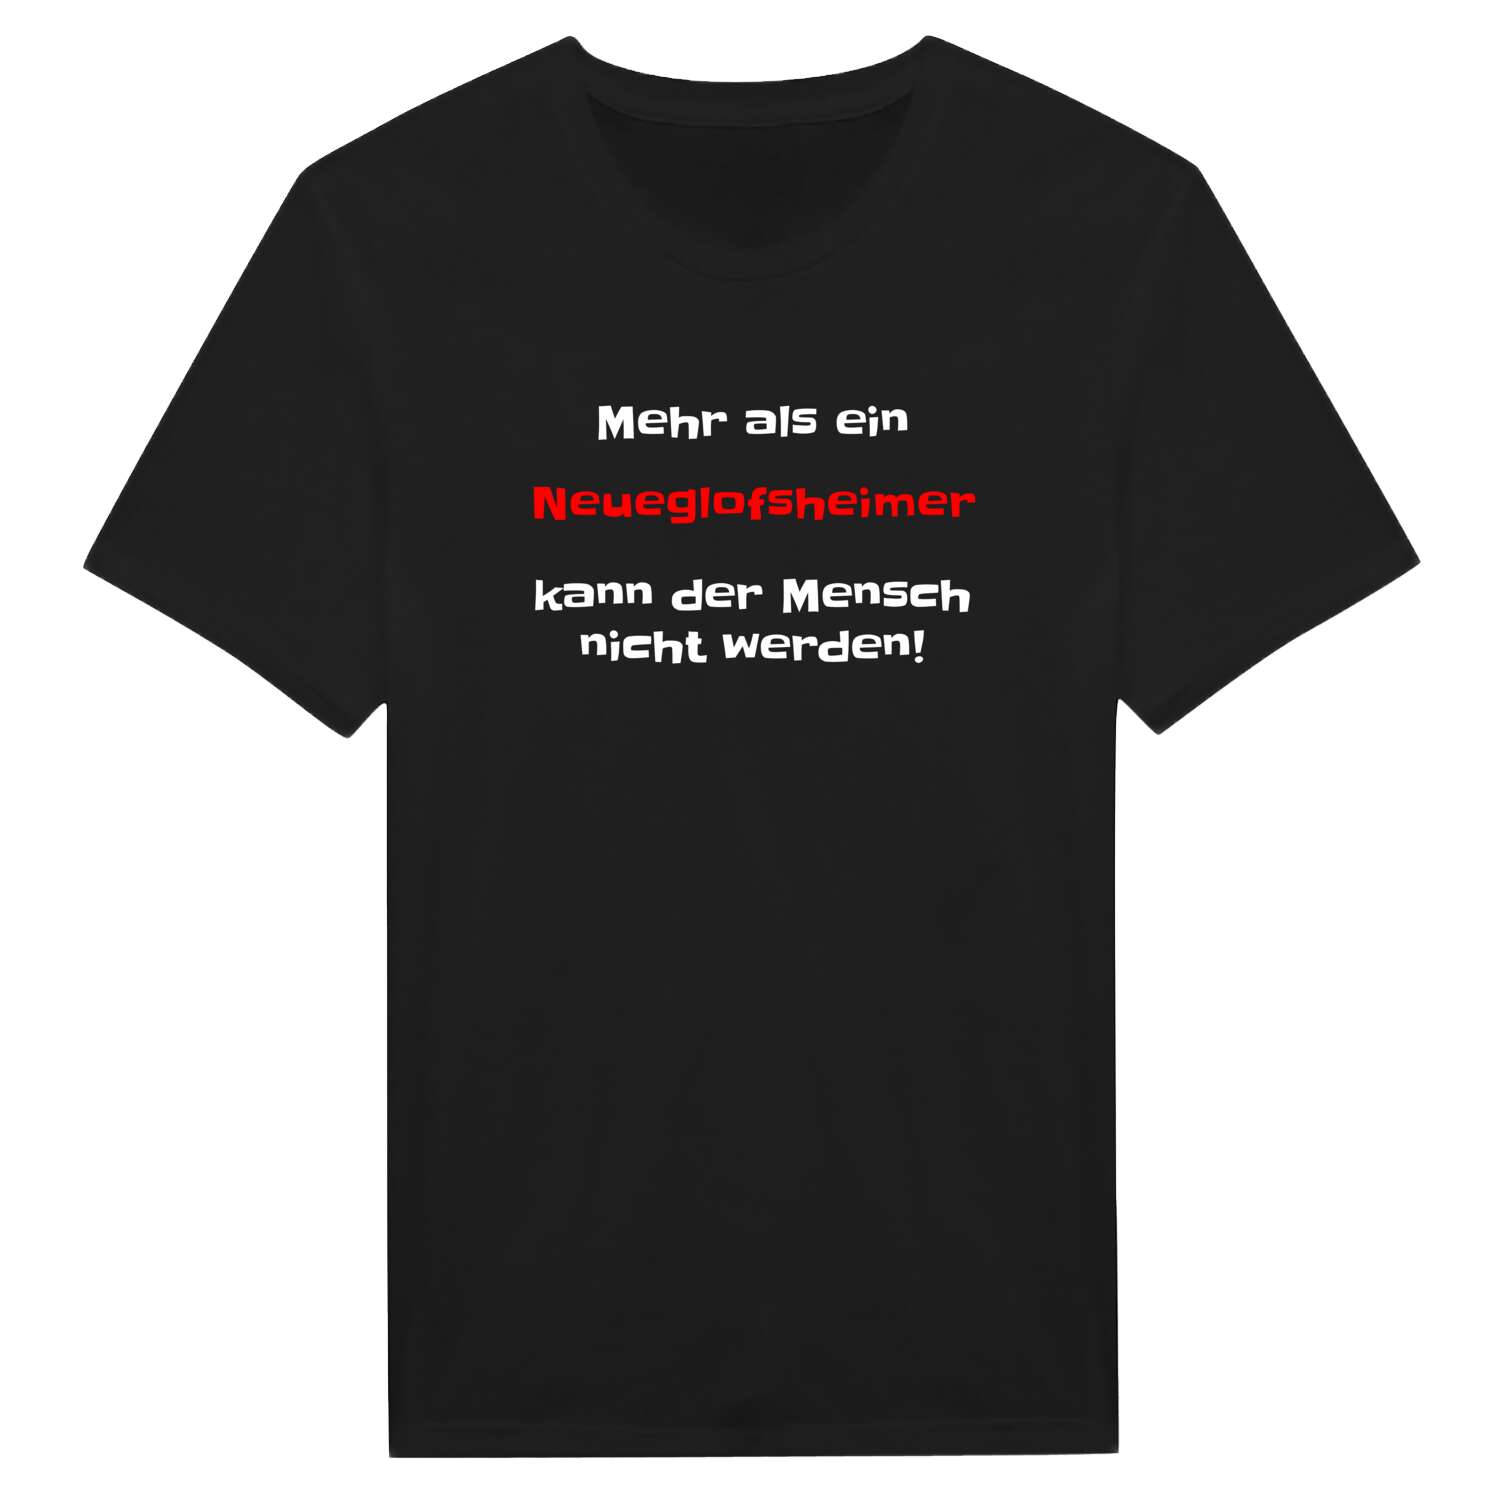 Neueglofsheim T-Shirt »Mehr als ein«